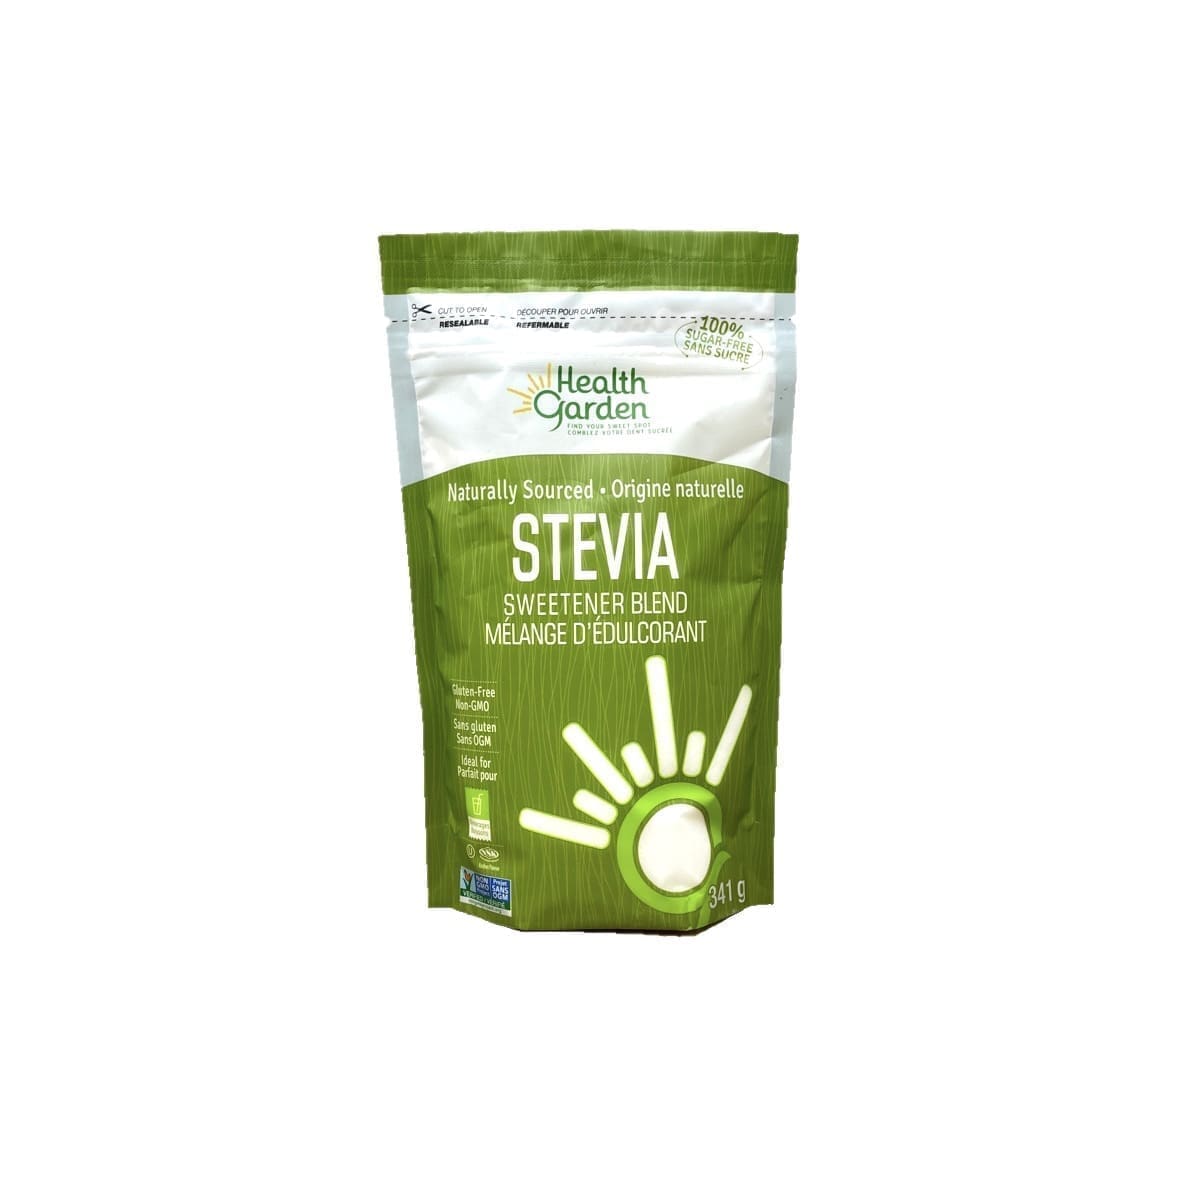 Health Garden Stevia (341g)